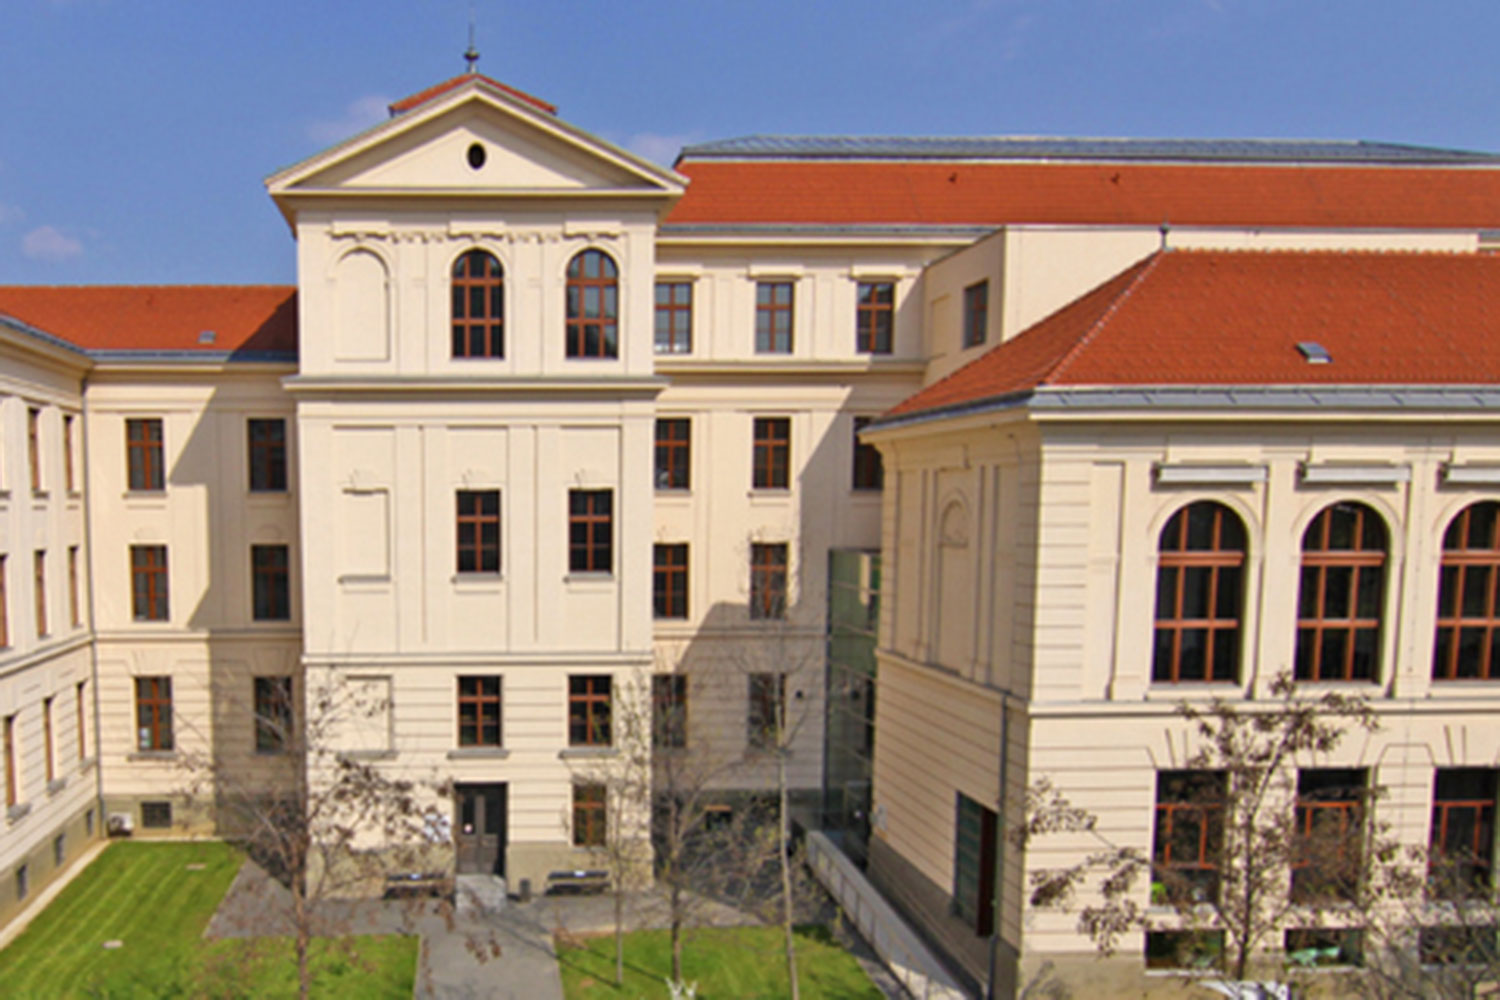 Pädagogische Hochschule